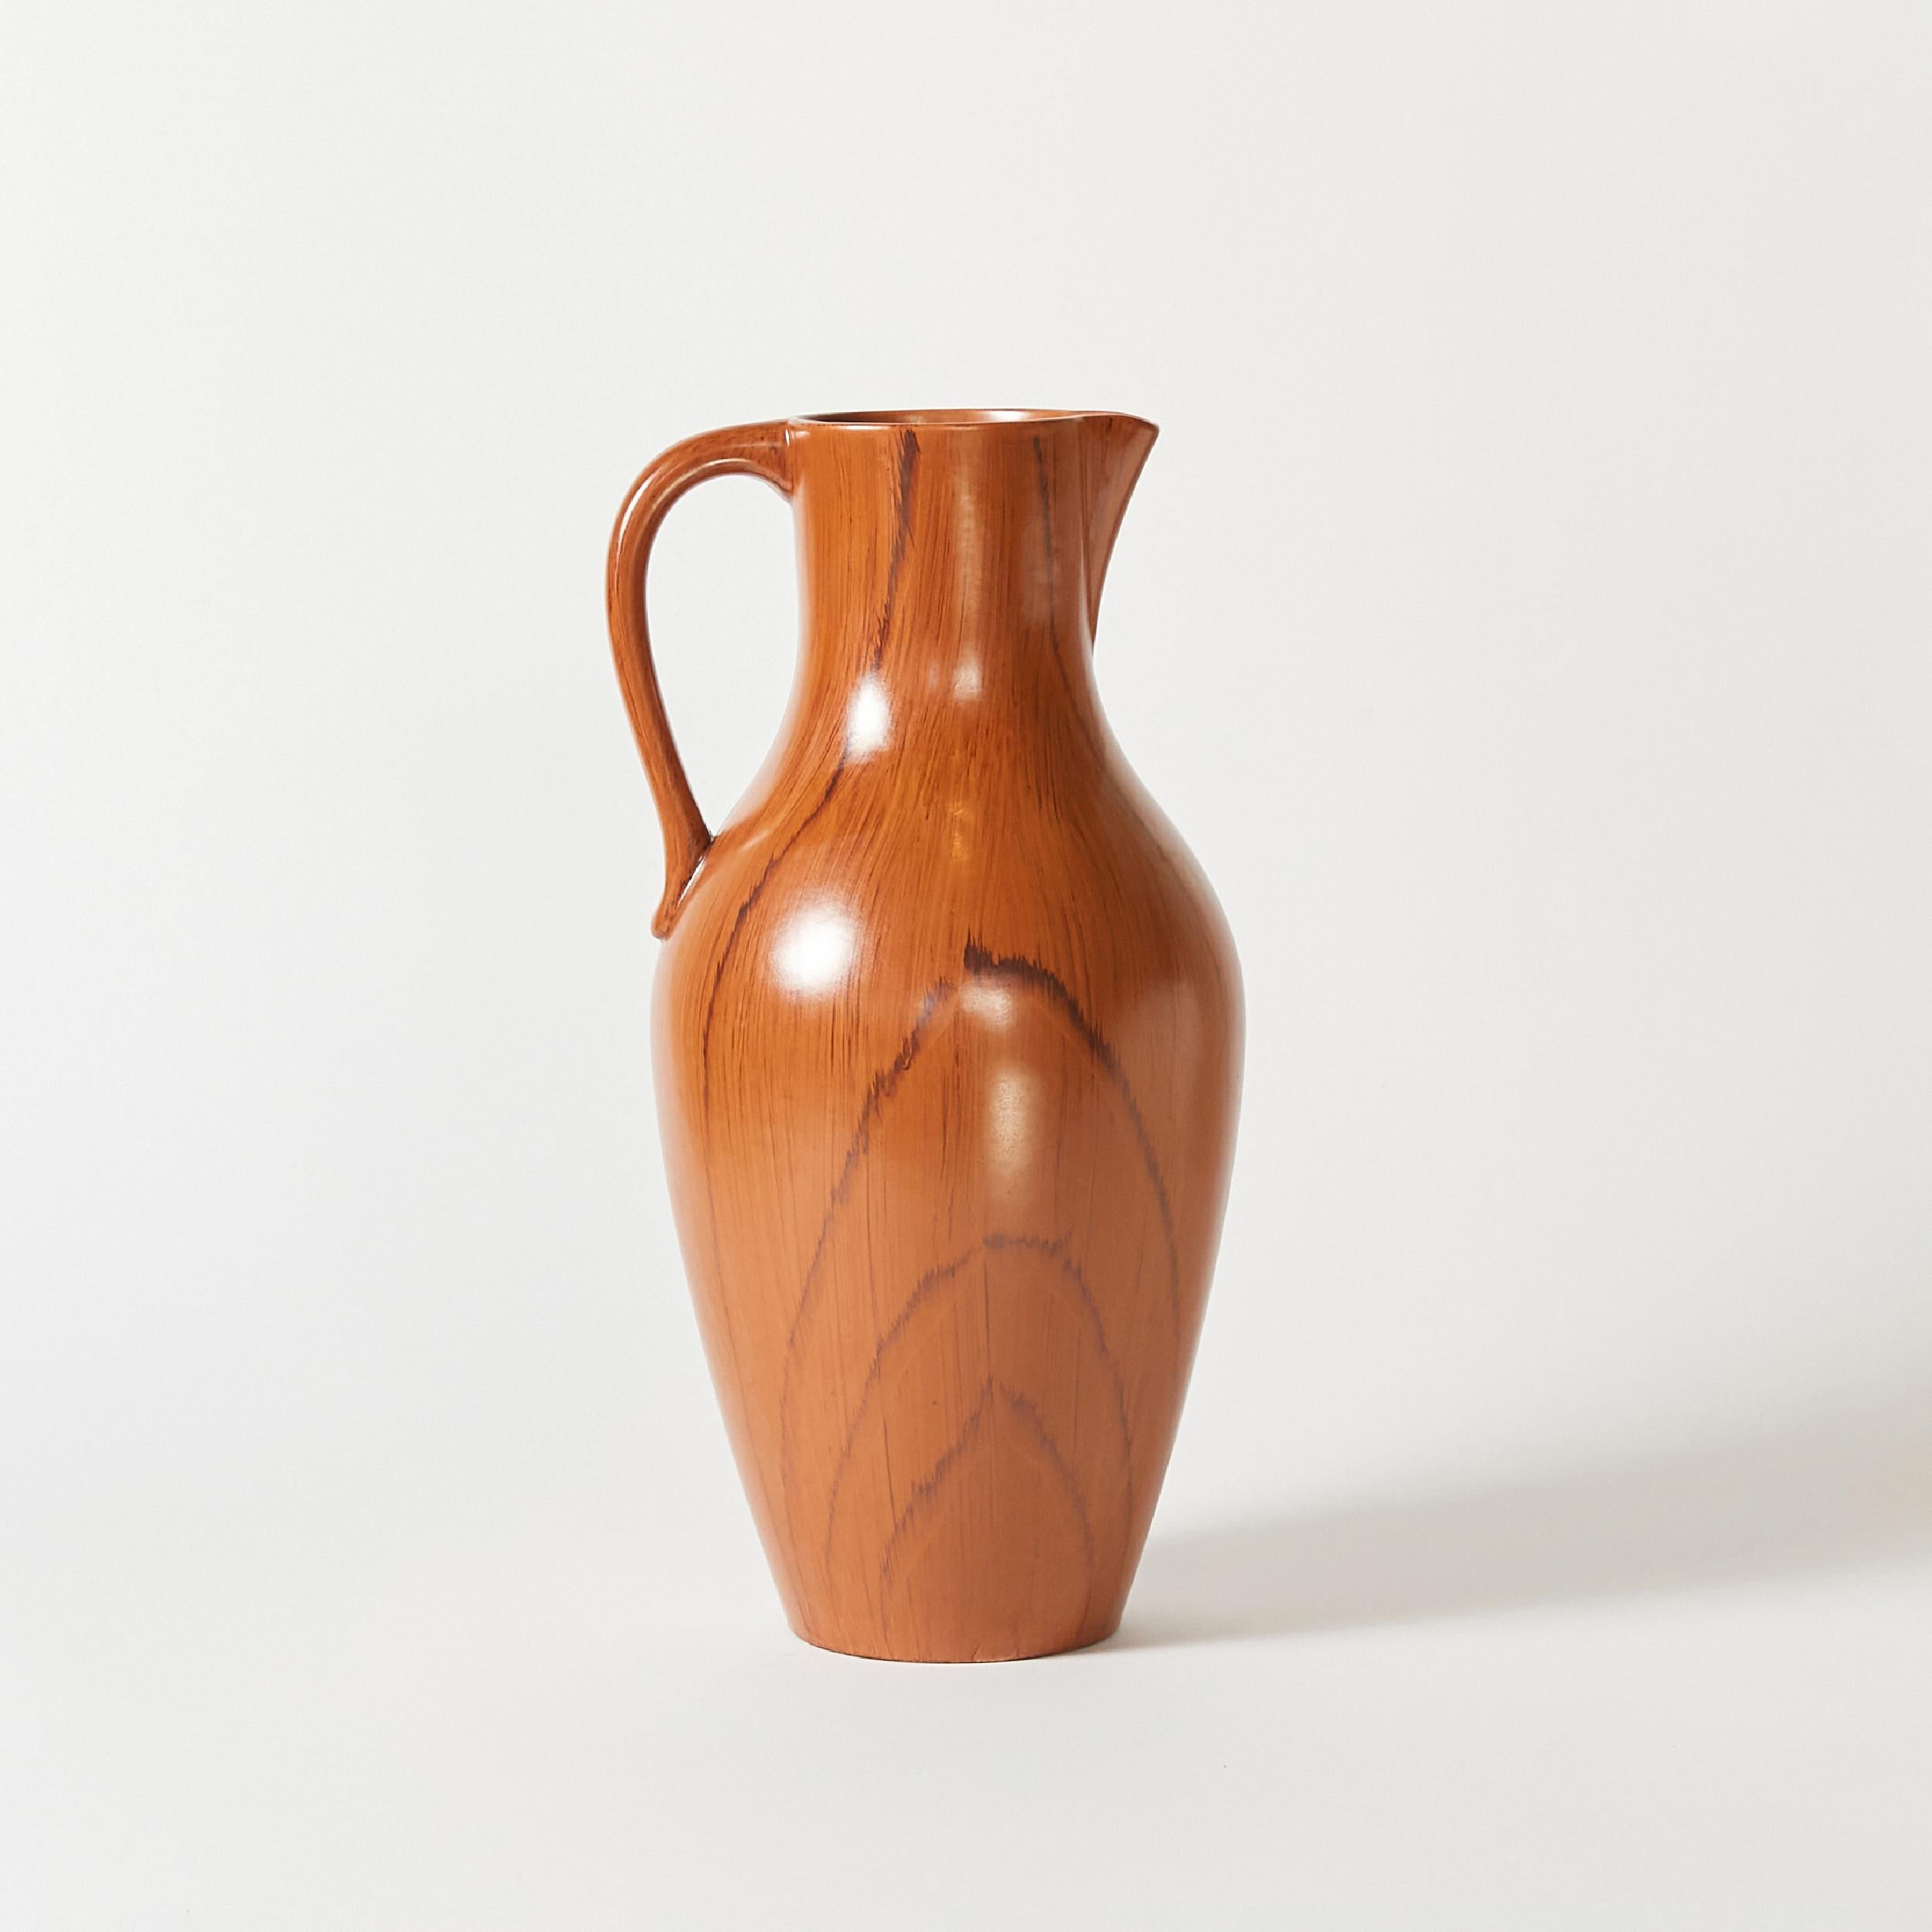 Ein extra großer Keramikkrug von Gräfenroda Keramik. Ursprünglich handgefertigt mit Holzimitatmuster und satinierter Glasur.
Hergestellt in Deutschland in den 1950er Jahren.
Etikettiert.